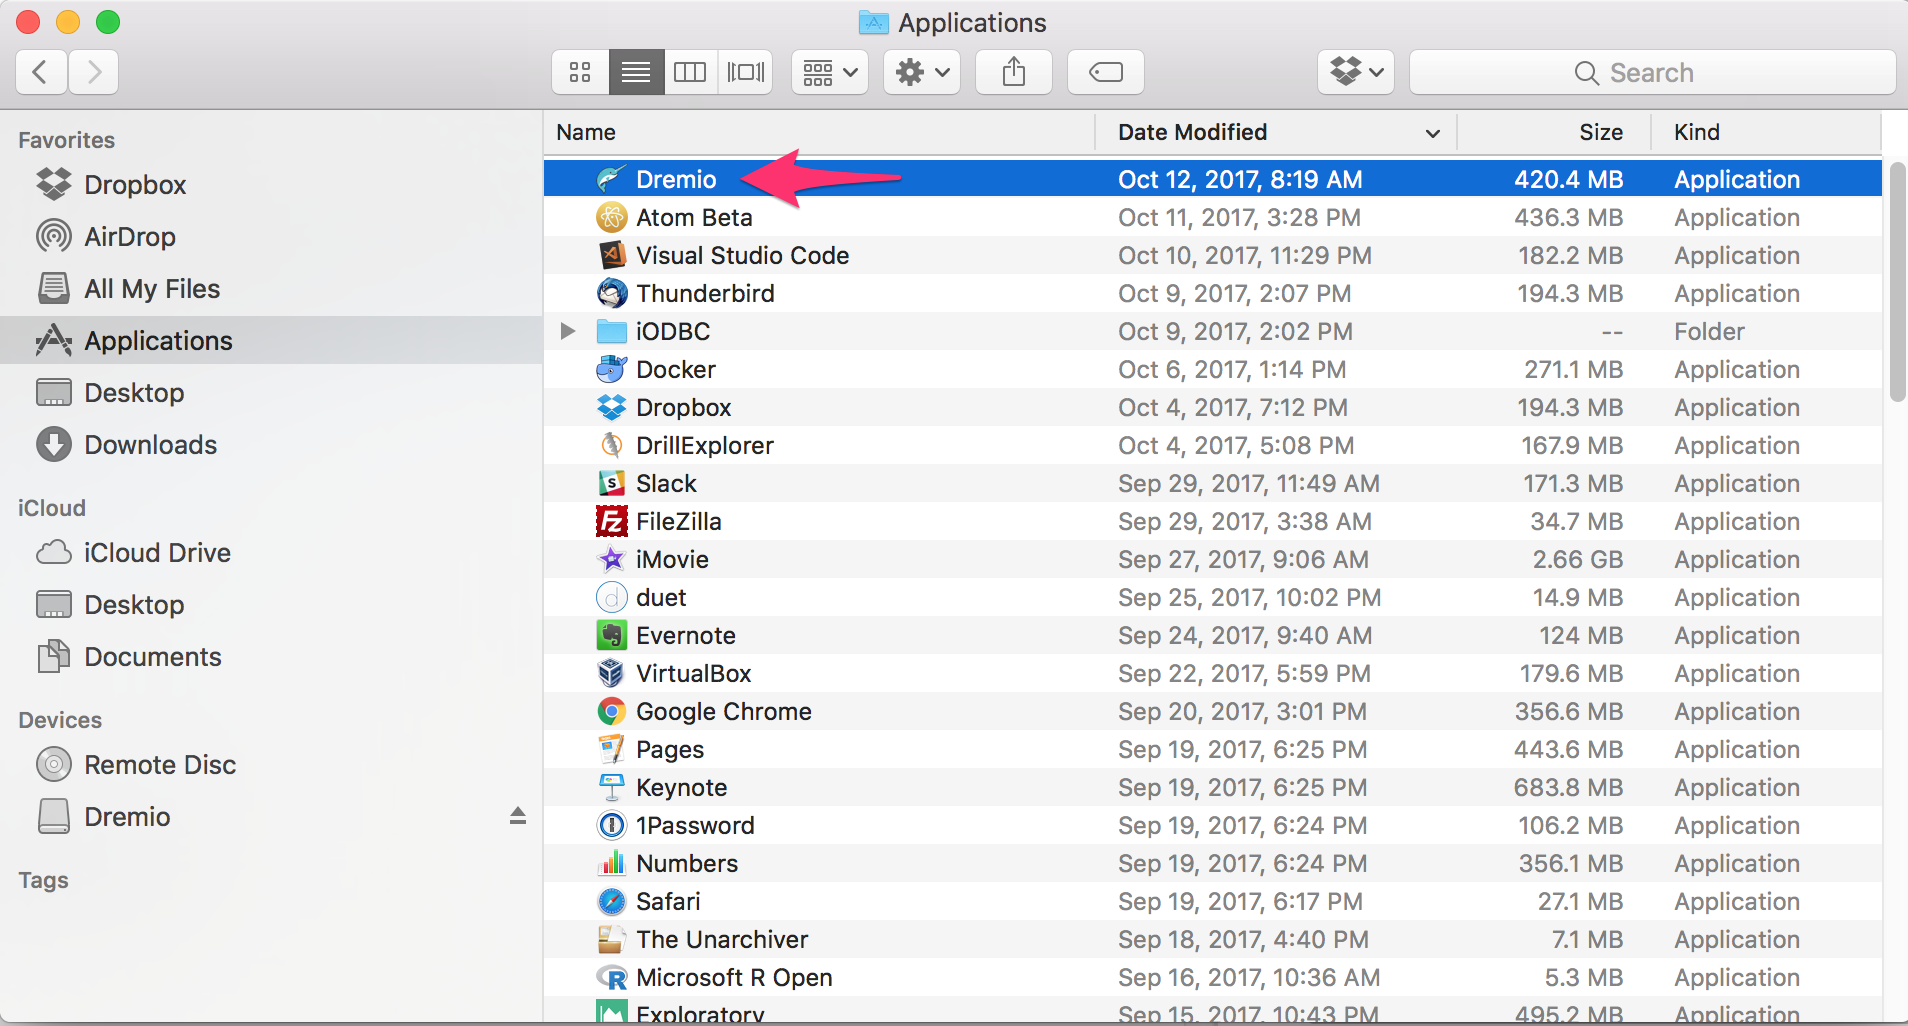 skype download for mac 10.6.8